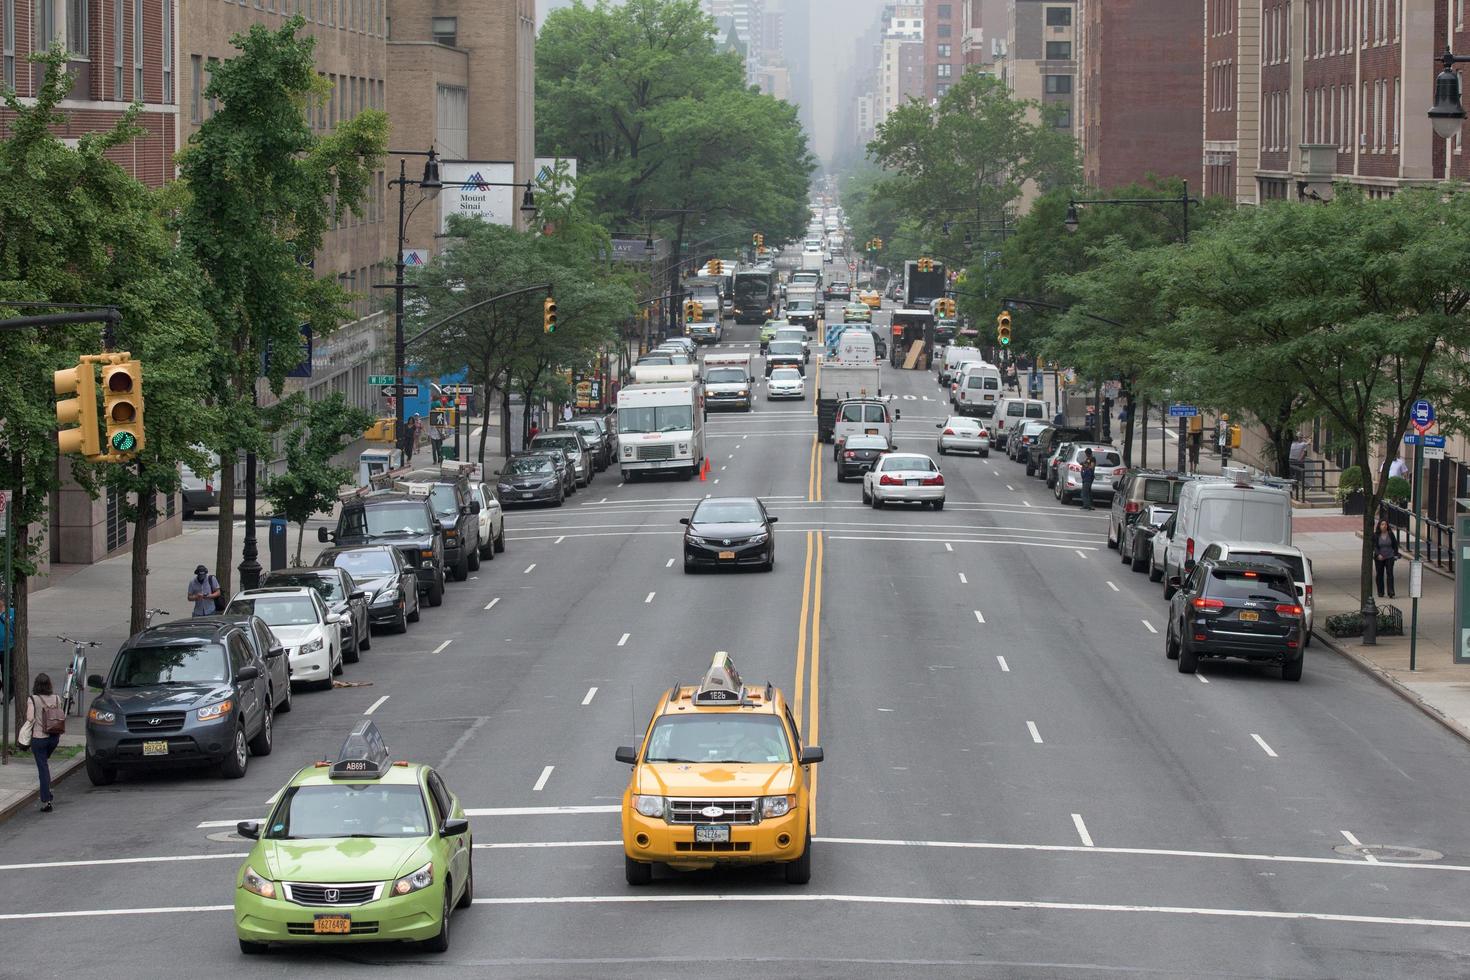 ciudad de nueva york - 14 de junio de 2015 ciudad congestionada calle y avenida foto